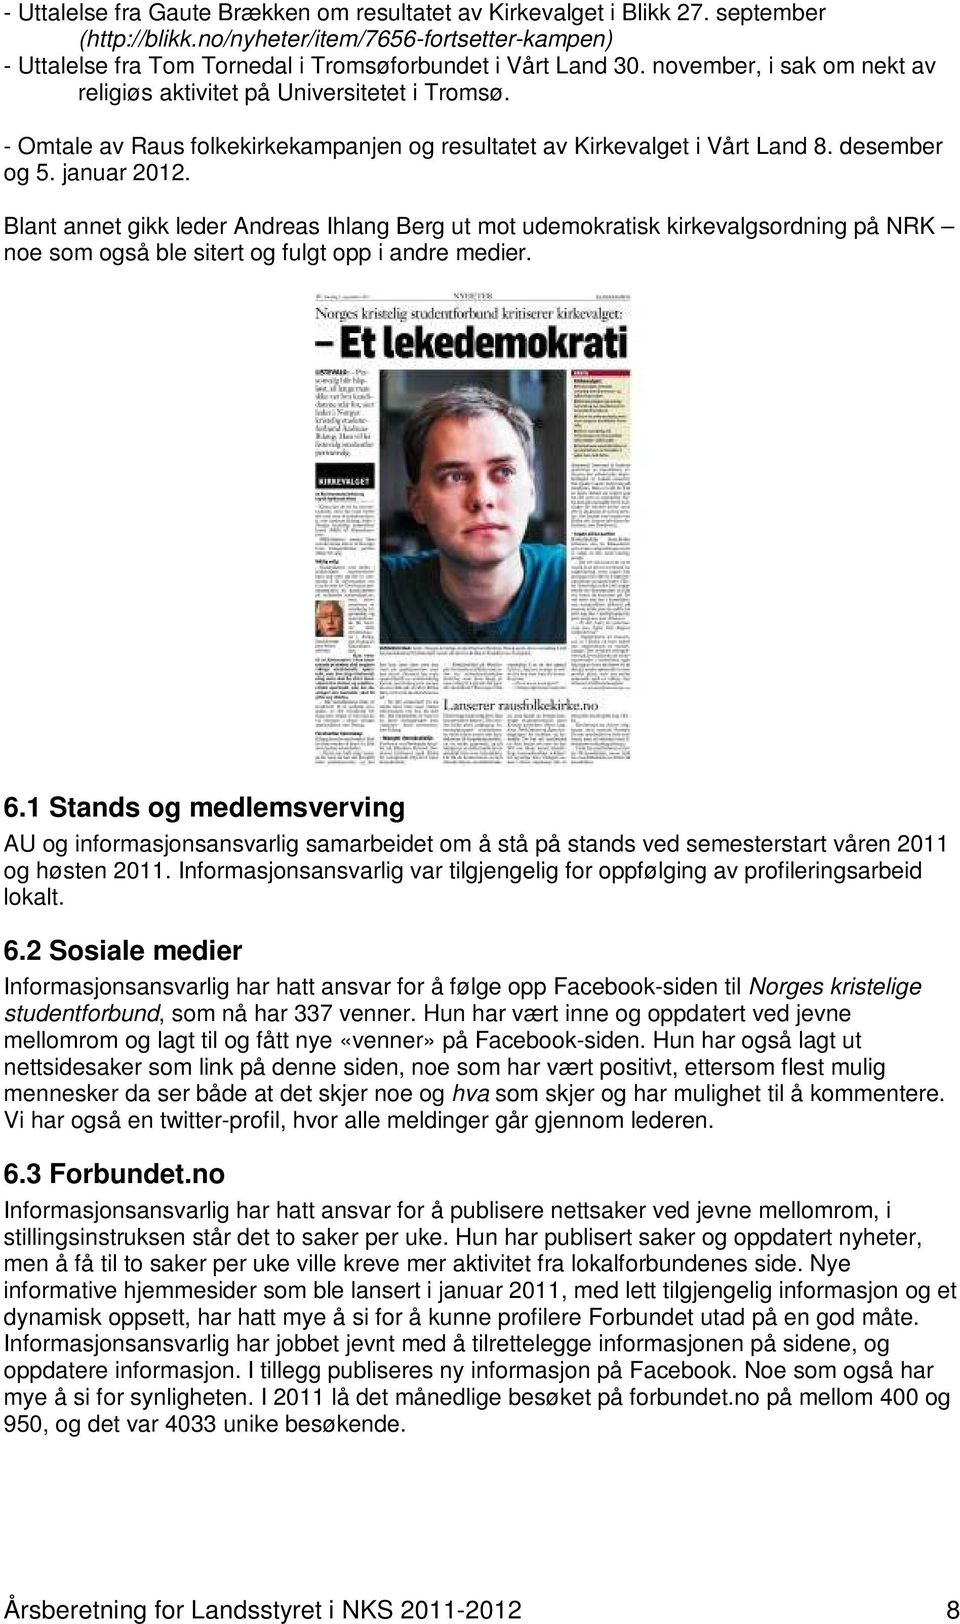 Blant annet gikk leder Andreas Ihlang Berg ut mot udemokratisk kirkevalgsordning på NRK noe som også ble sitert og fulgt opp i andre medier. 6.